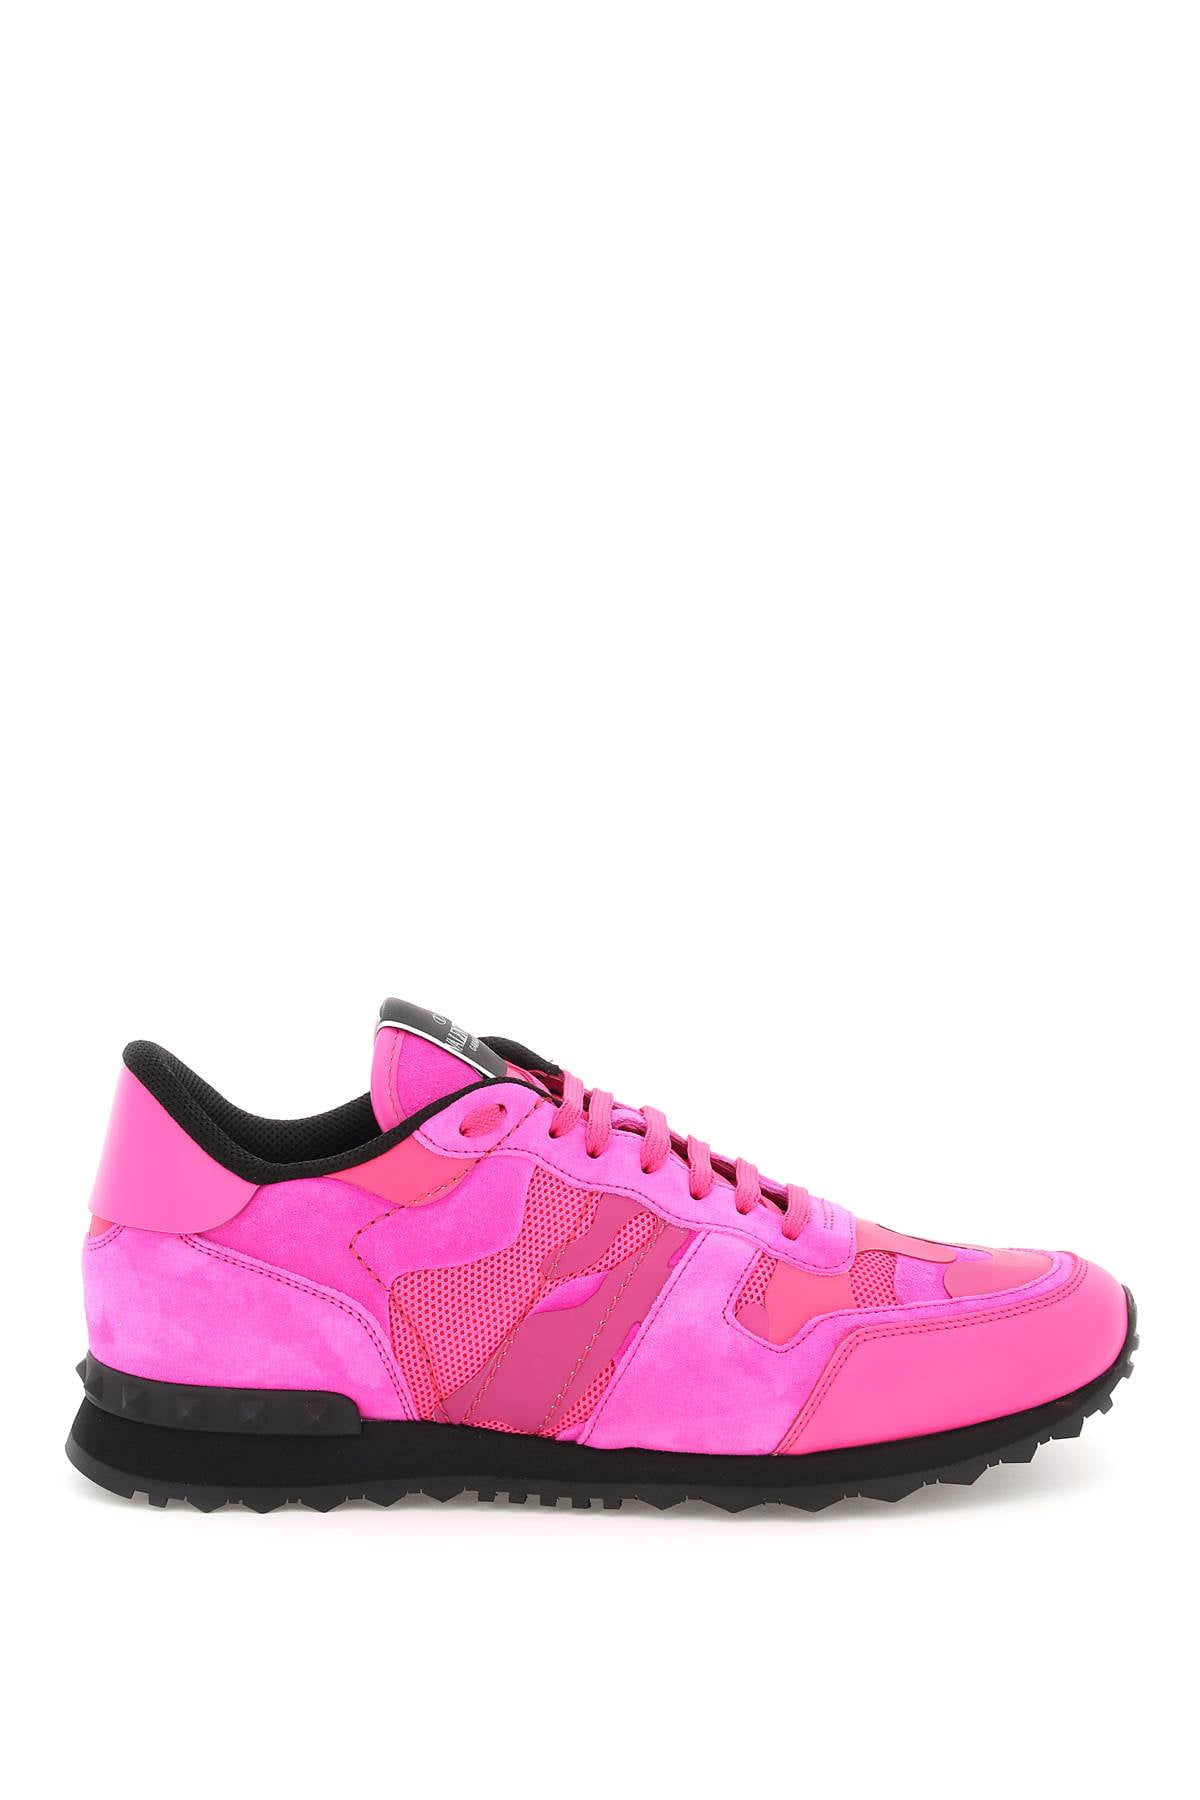 verpleegster Identificeren sigaar Valentino garavani pink pp camo rockrunner sneakers - Walmart.com